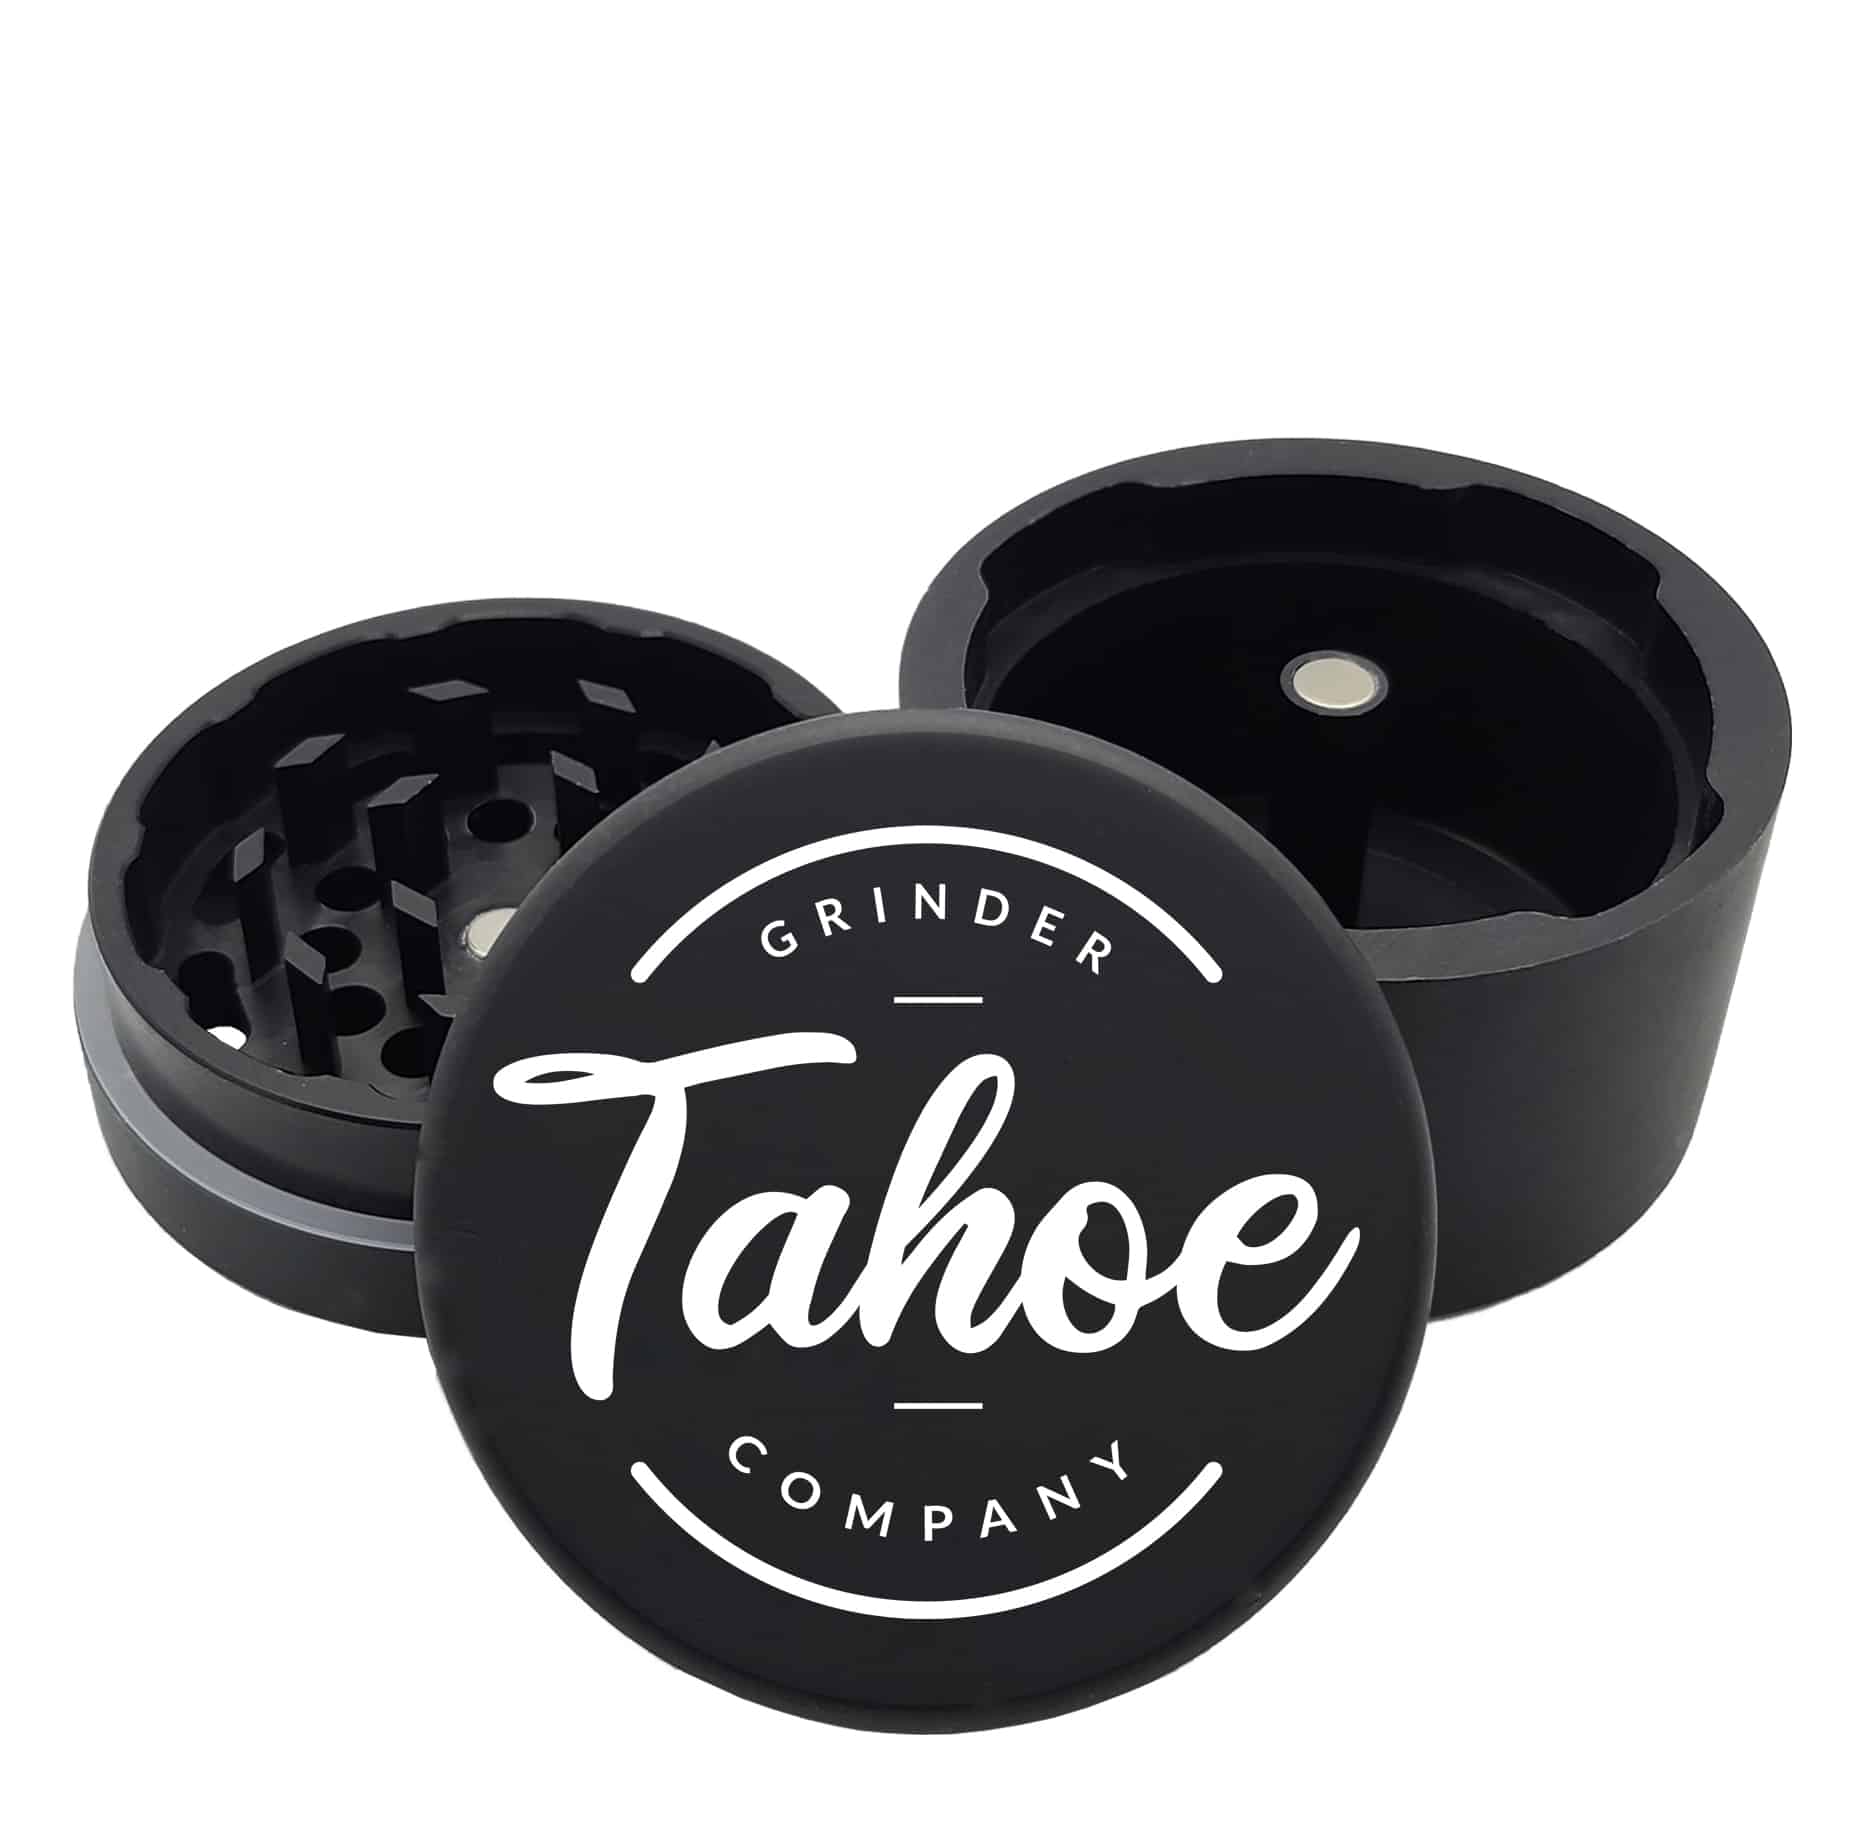 https://tahoegrinderco.com/wp-content/uploads/2023/06/round-tahoe-top-logo.jpg